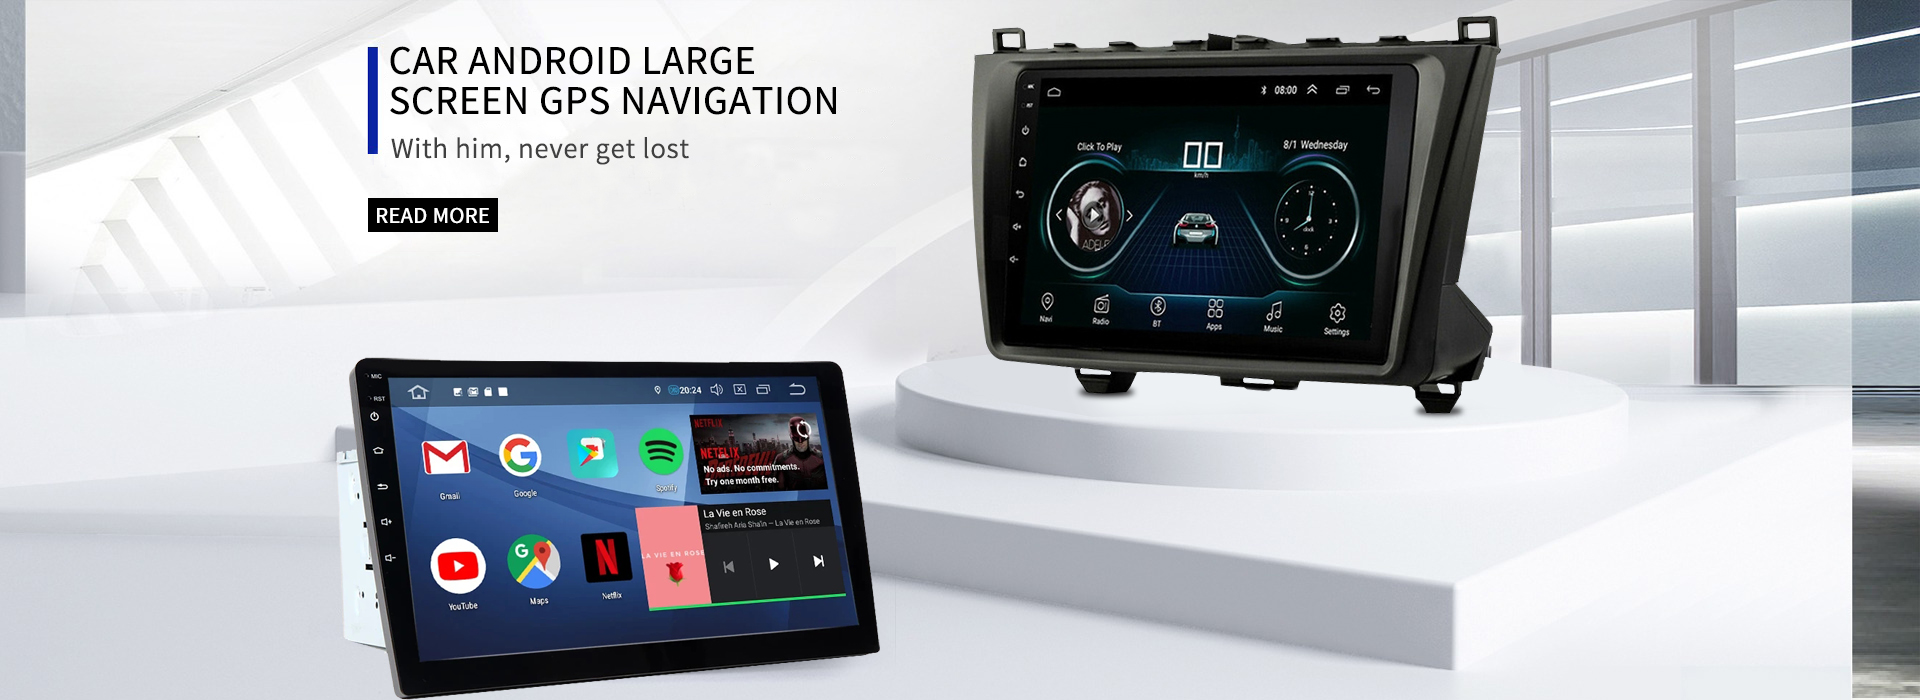 ГПС навигација са великим екраном за аутомобил у Андроиду